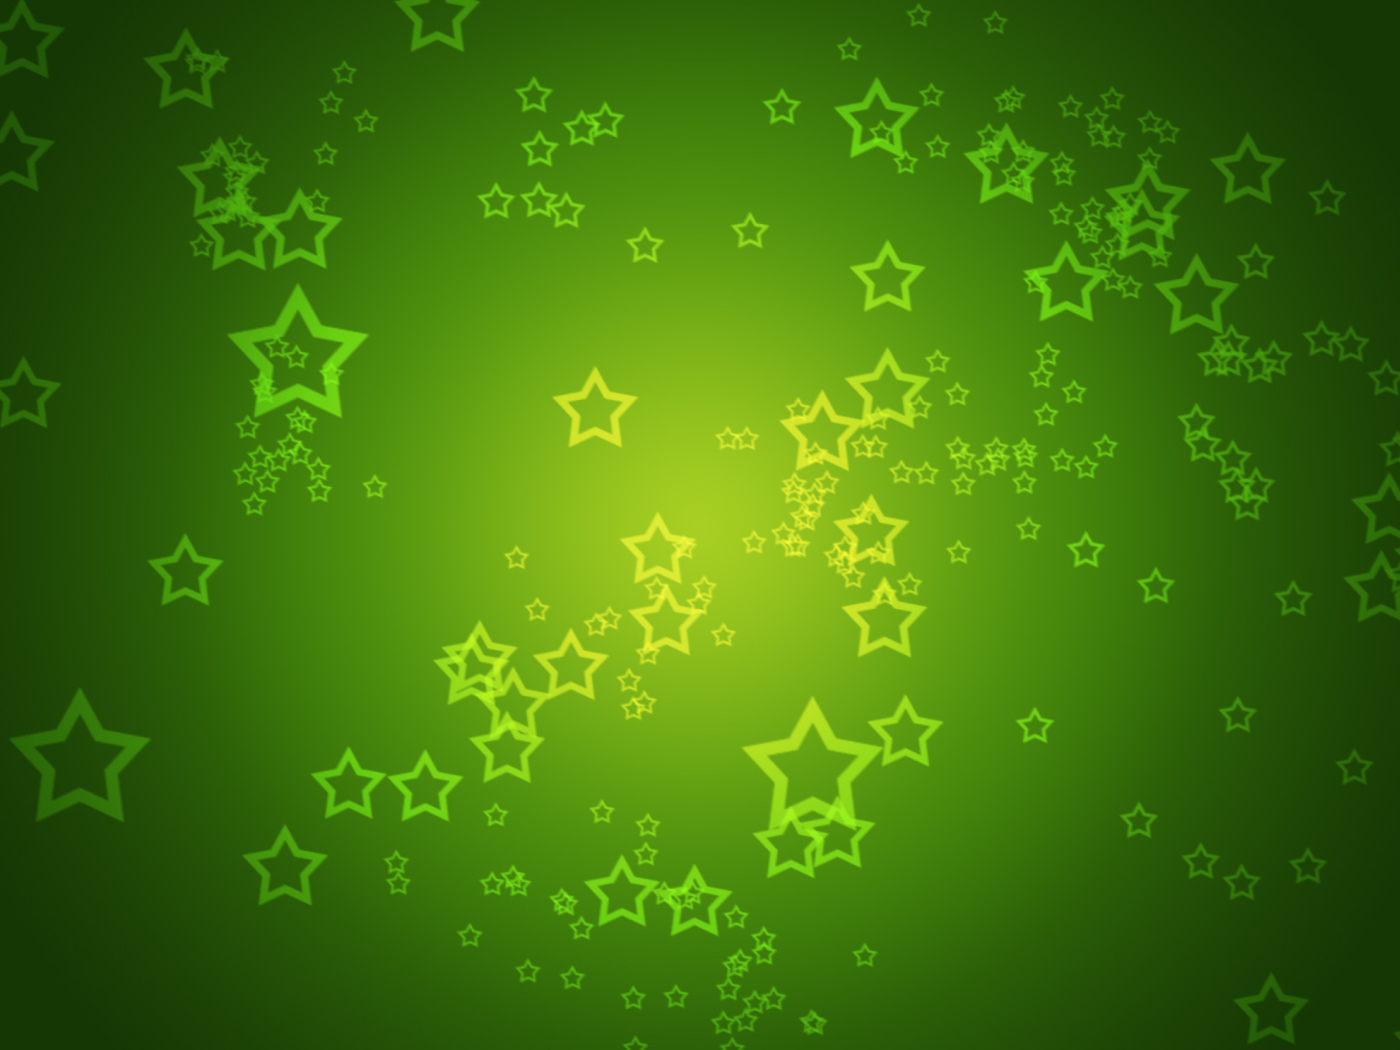 Das Green Stars Wallpaper 1400x1050